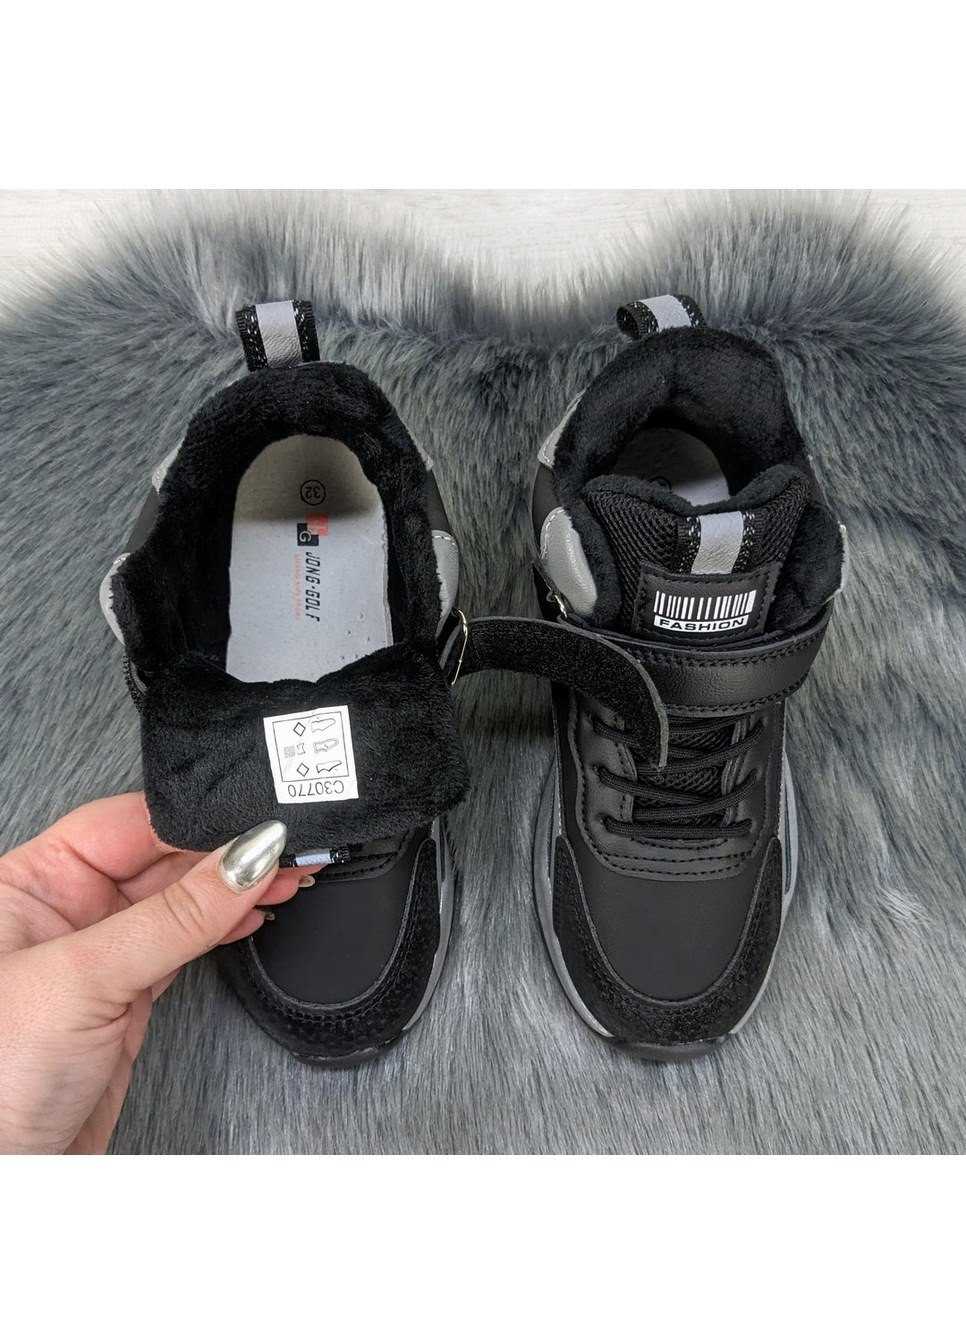 Черные повседневные осенние ботинки детские демисезонные для мальчика Jong Golf